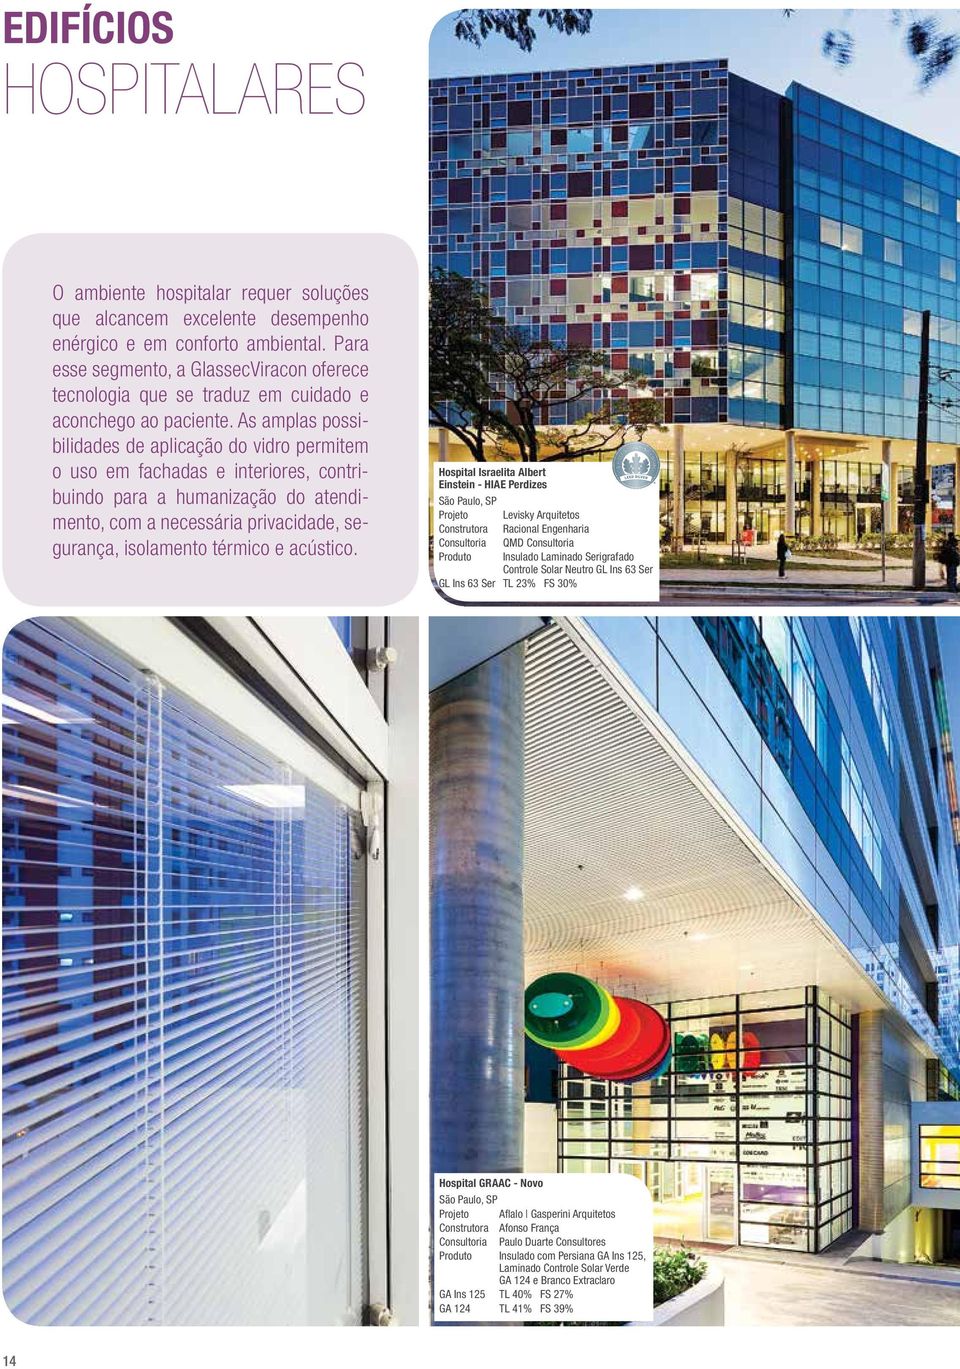 As amplas possibilidades de aplicação do vidro permitem o uso em fachadas e interiores, contribuindo para a humanização do atendimento, com a necessária privacidade, segurança, isolamento térmico e